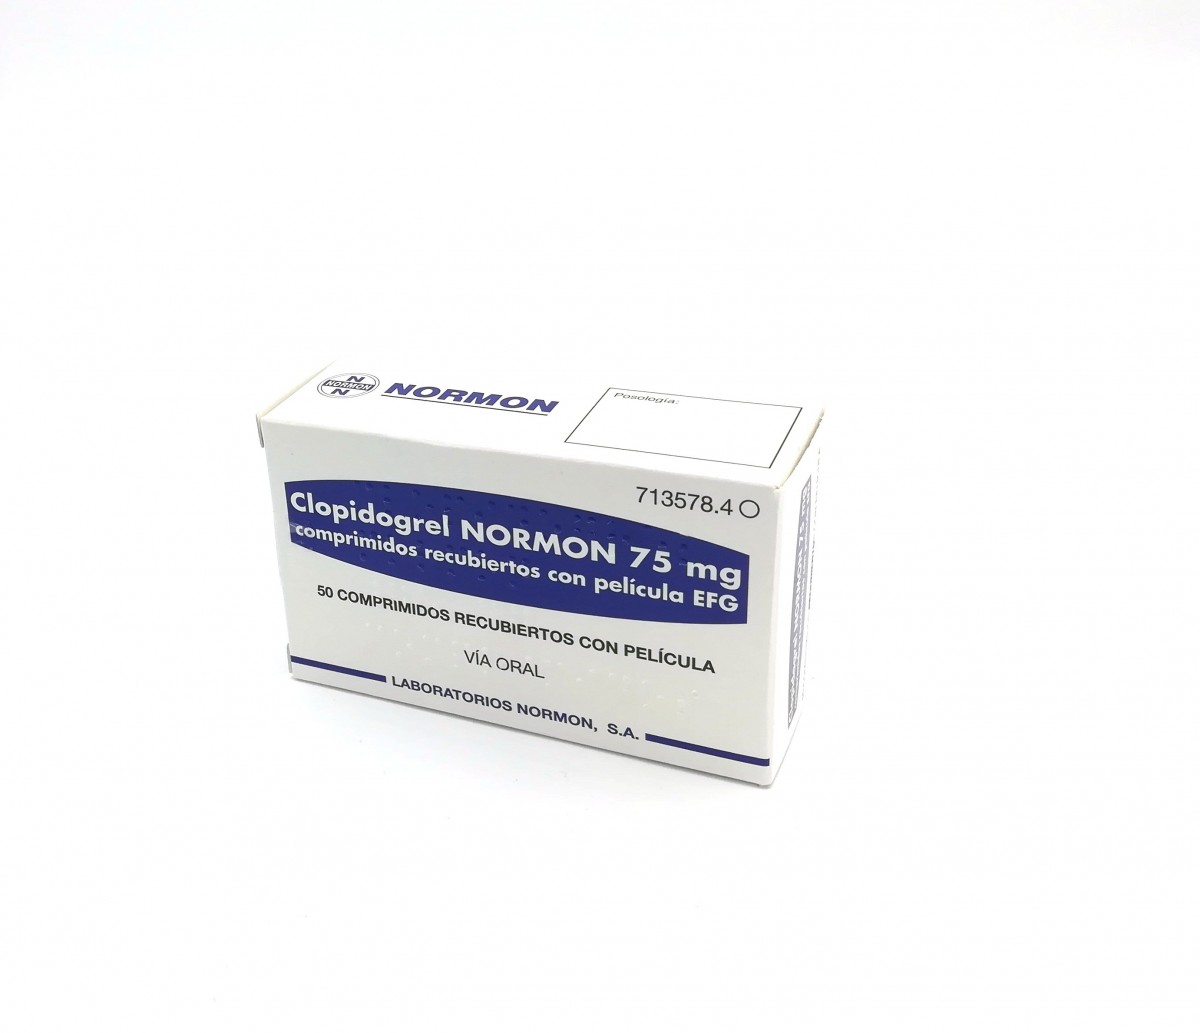 CLOPIDOGREL NORMON 75 mg COMPRIMIDOS RECUBIERTOS CON PELICULA EFG, 28 comprimidos (Blister Al/PVC/Al/PA) fotografía del envase.